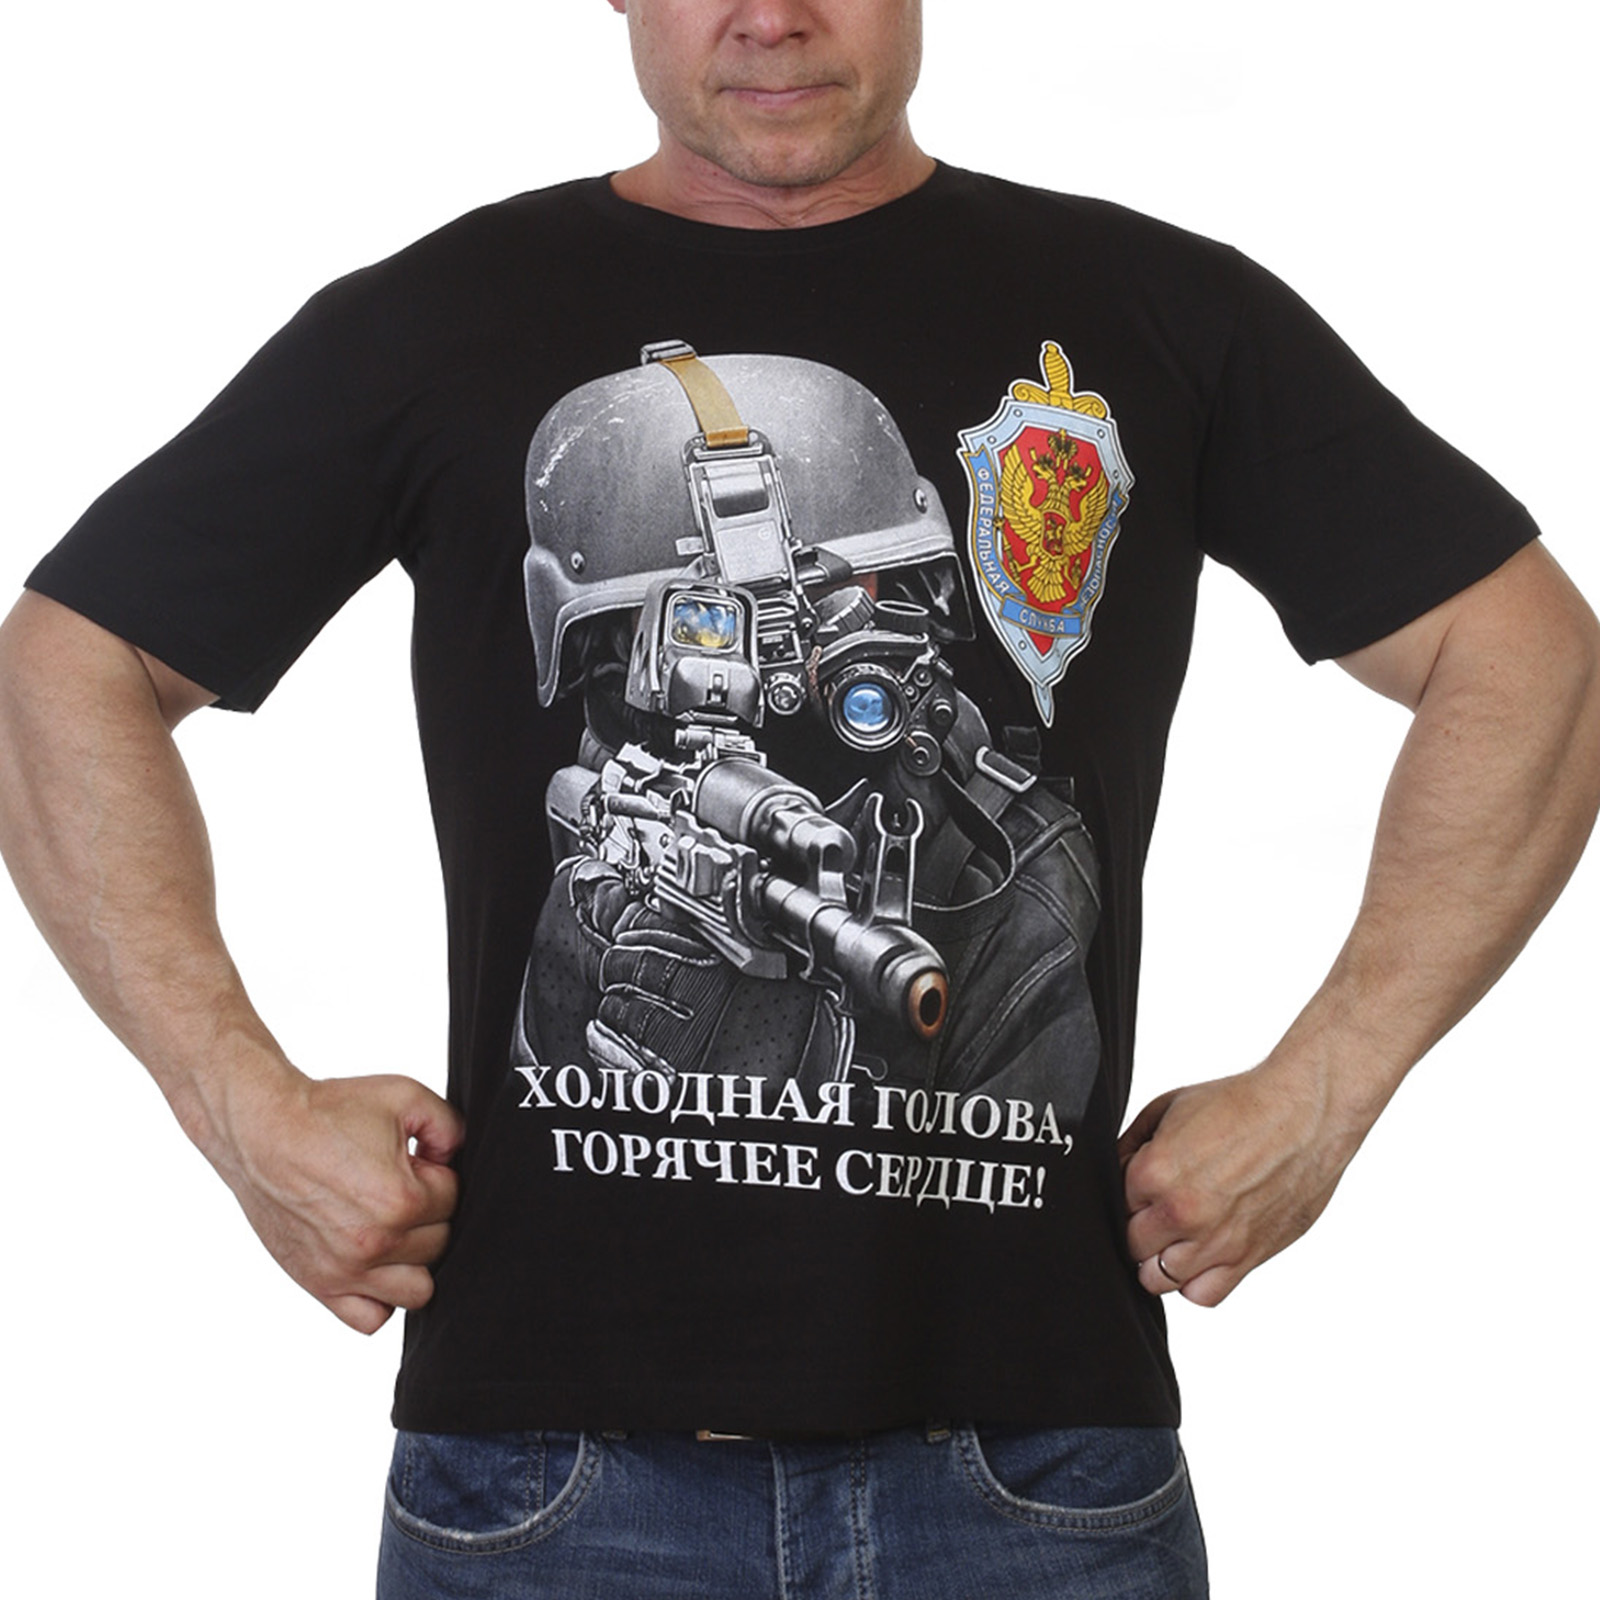 Купить футболку «ФСБ», в Военторге «Военпро»